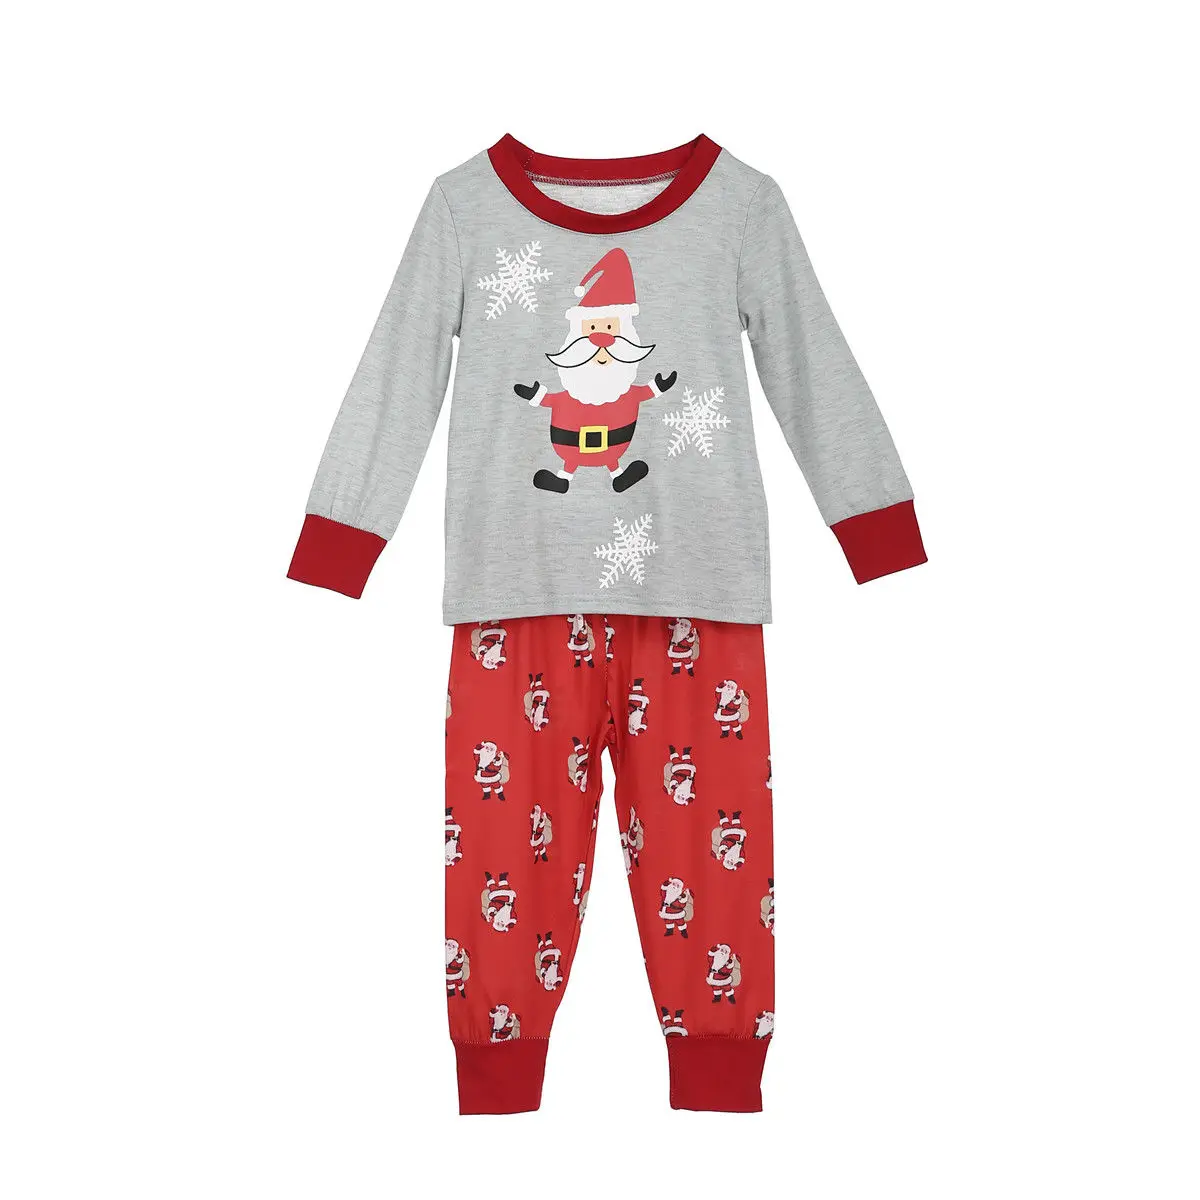 Рождественские пижамы для всей семьи, комплект рождественской одинаковой одежды для всей семьи одежда для сна для взрослых и детей с милым рисунком Санта-Клауса домашняя ночная рубашка для вечеринки